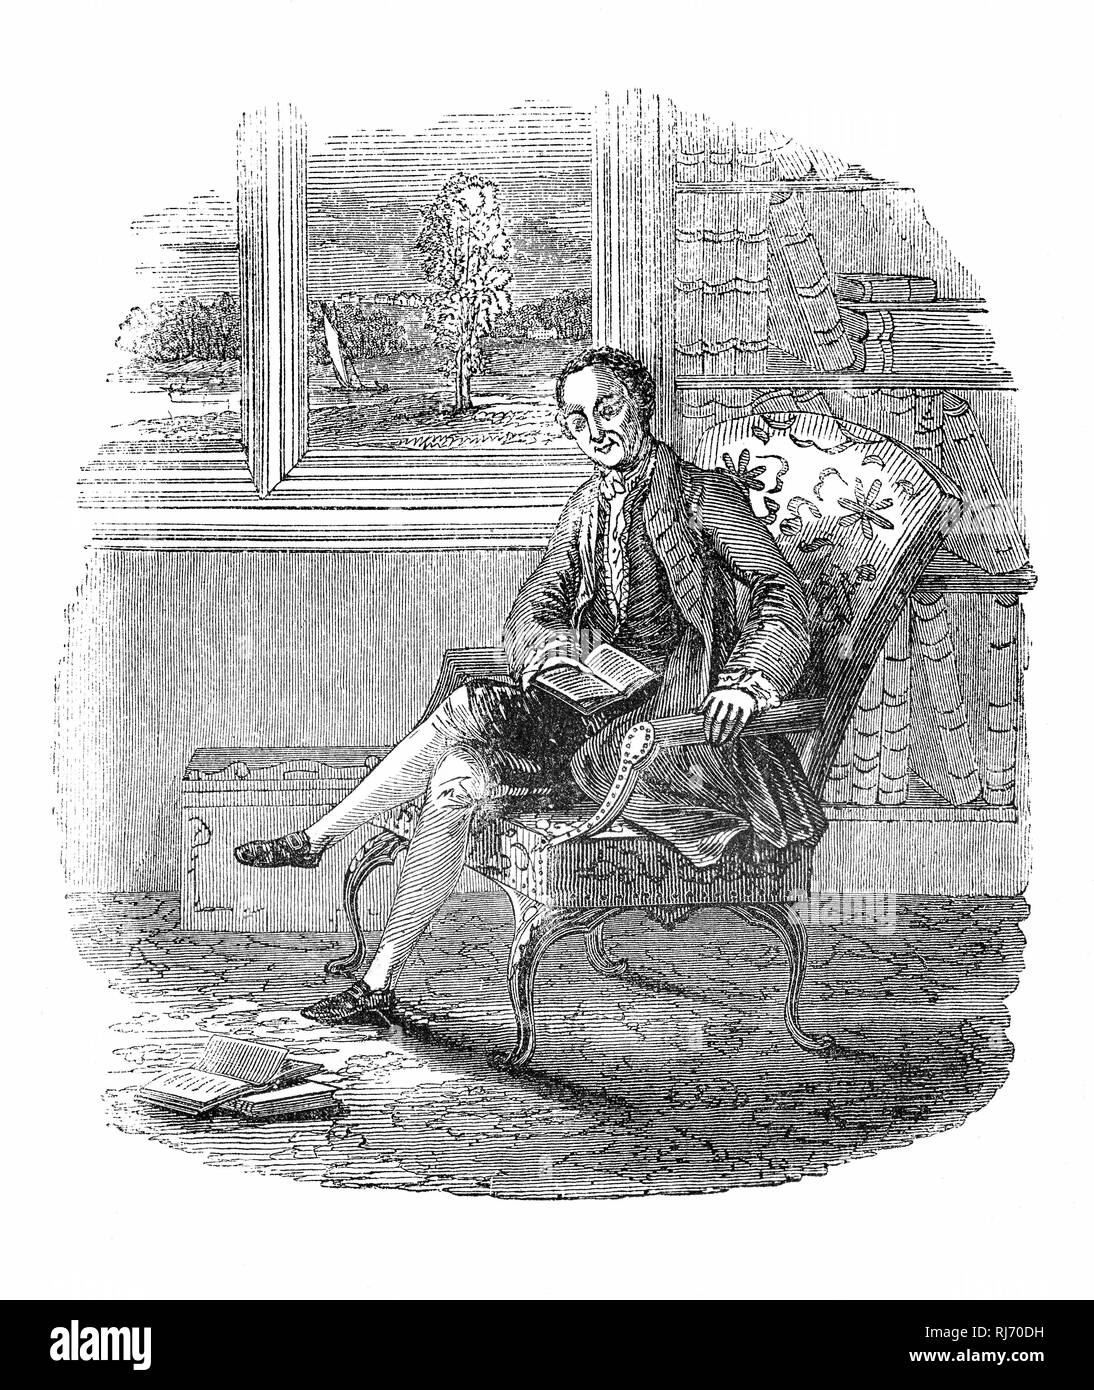 Horatio Walpole, 4. Earl of Orford (1717-1797), die auch als Horace Walpole, der Sohn des ersten britischen Premierminister, Sir Robert Walpole bekannt, war eine englische Schriftstellerin, Kunsthistorikerin, Literat, Antiquariaten und Whig Politiker. Er hatte Strawberry Hill House in Twickenham, südlich von London, die Wiederbelebung der Gotischen Stil einige Jahrzehnte vor seinem viktorianischen Nachfolger. Seinen literarischen Ruf beruht auf der ersten gotischen Roman, das Schloss von Otranto (1764), und seine Briefe, die von erheblichen gesellschaftlichen und politischen Interesses. Stockfoto